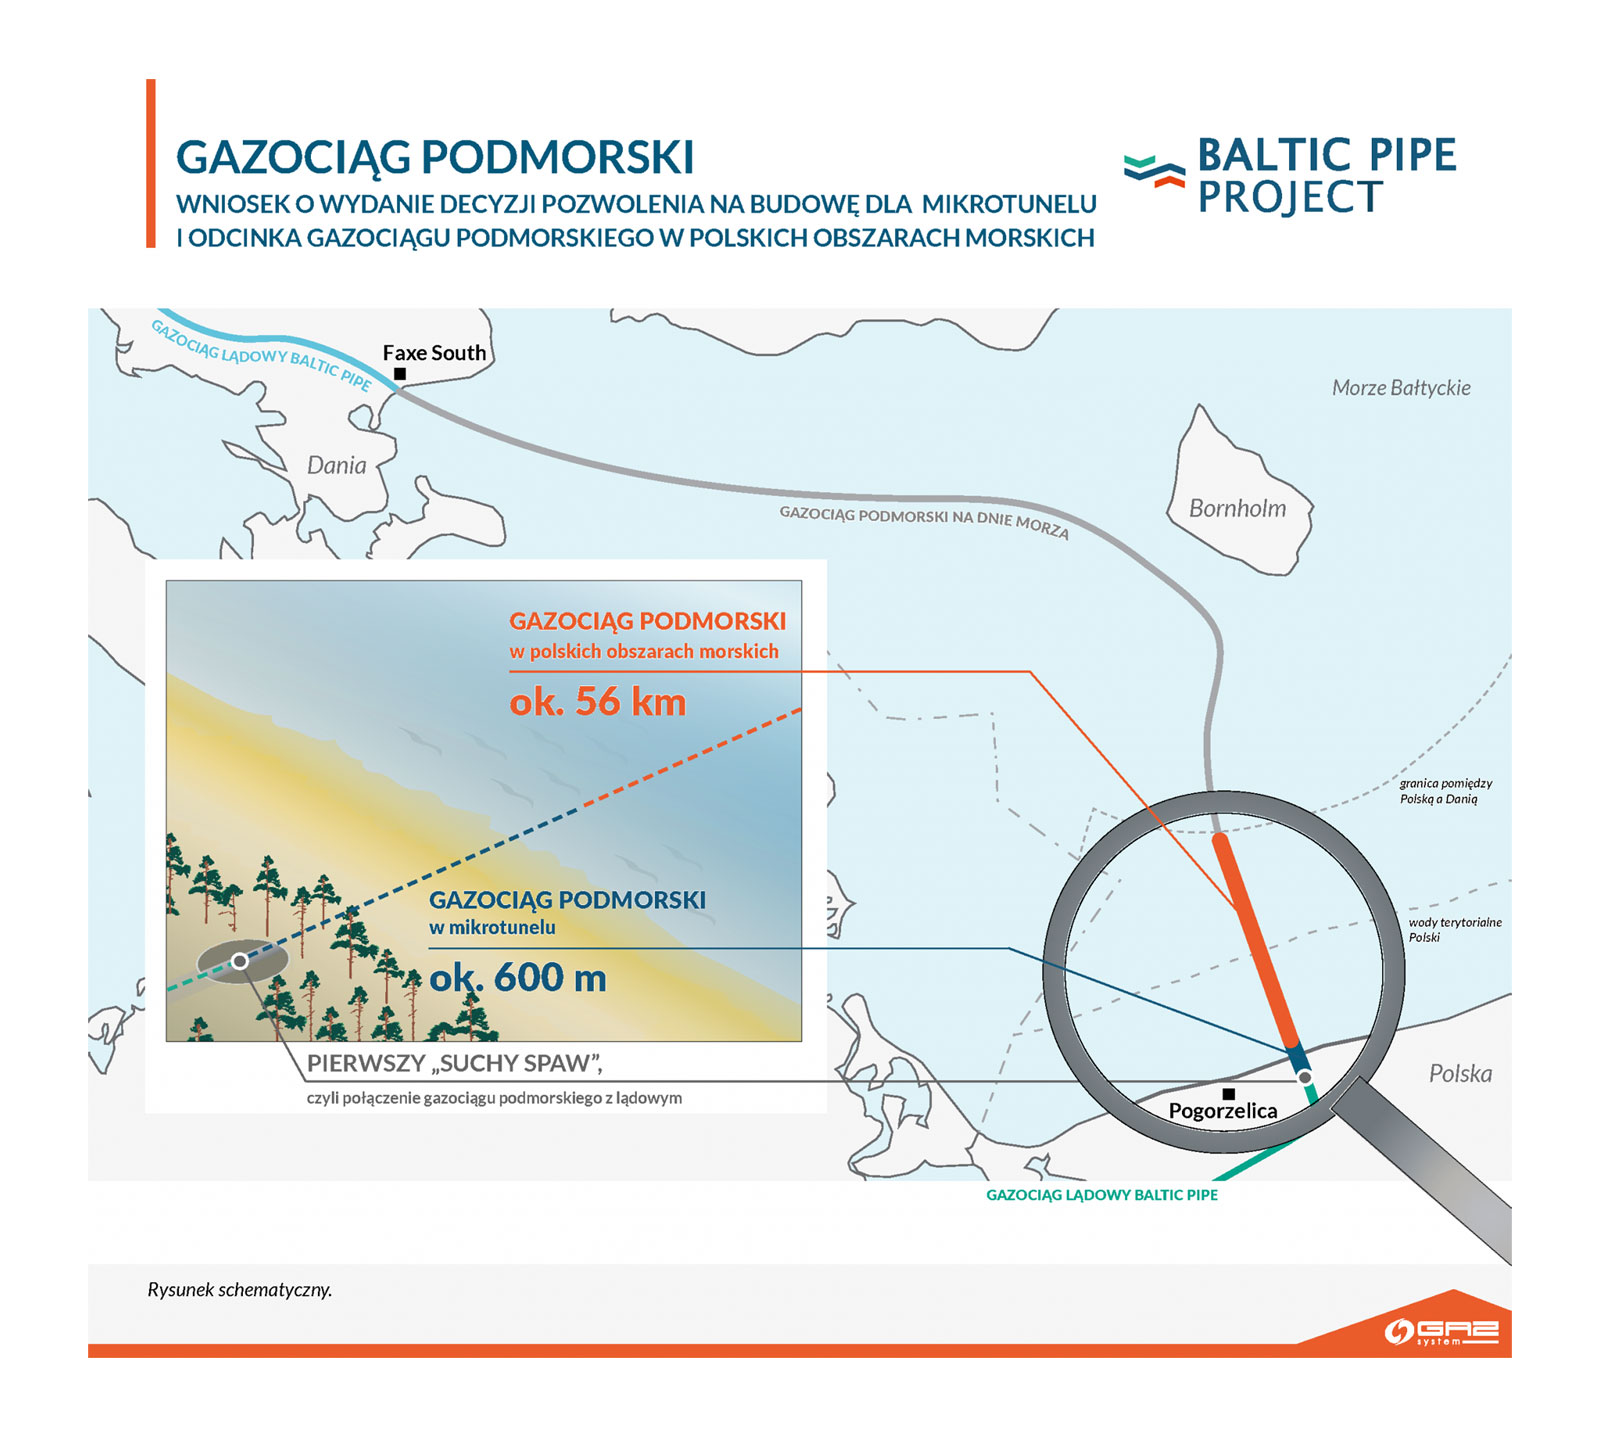 Baltic Pipe wkrótce z kompletem pozwoleń